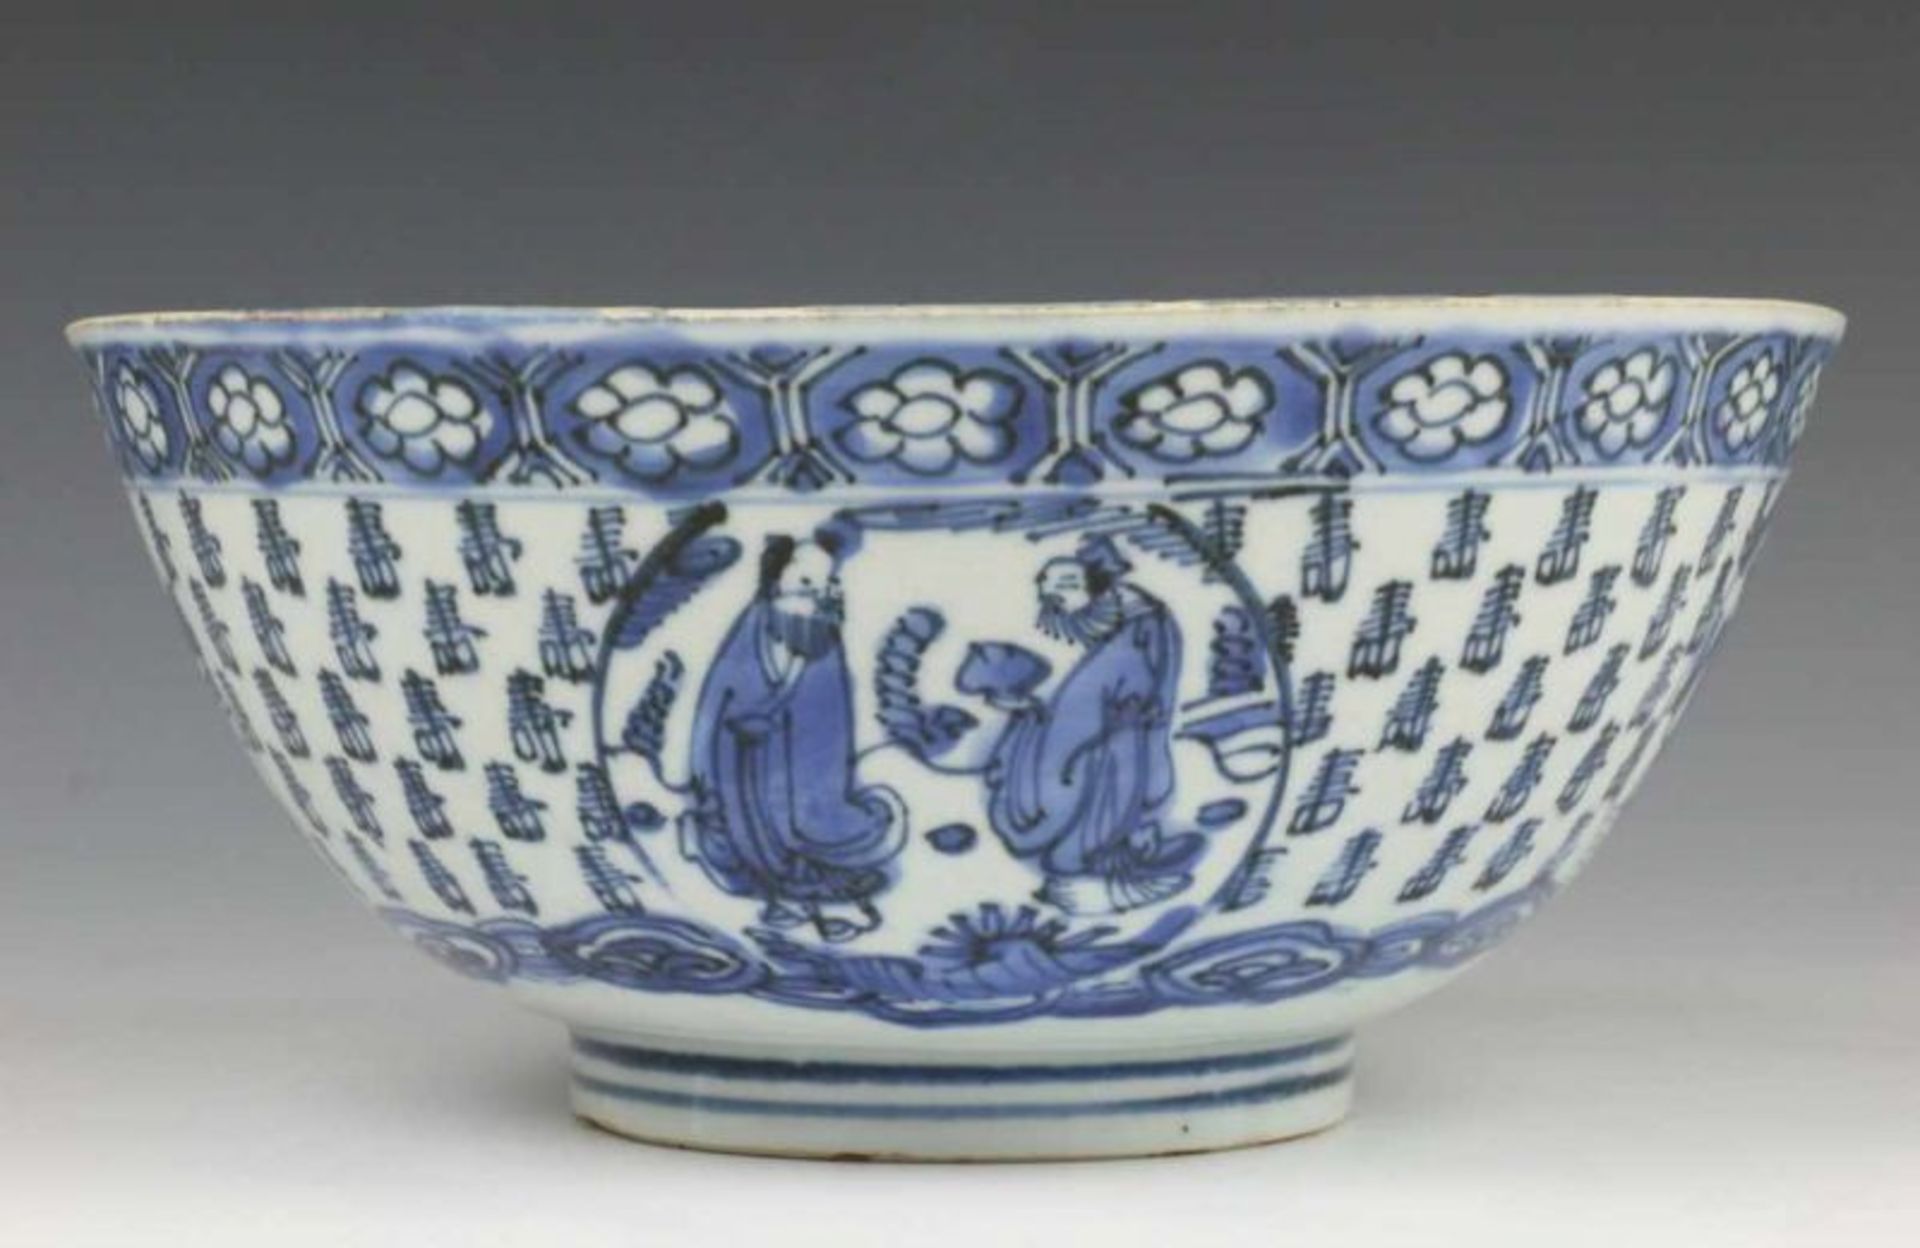 China, blauw-wit porseleinen kom, Wanli, met vol decor van karakters en medaillons waarin twee